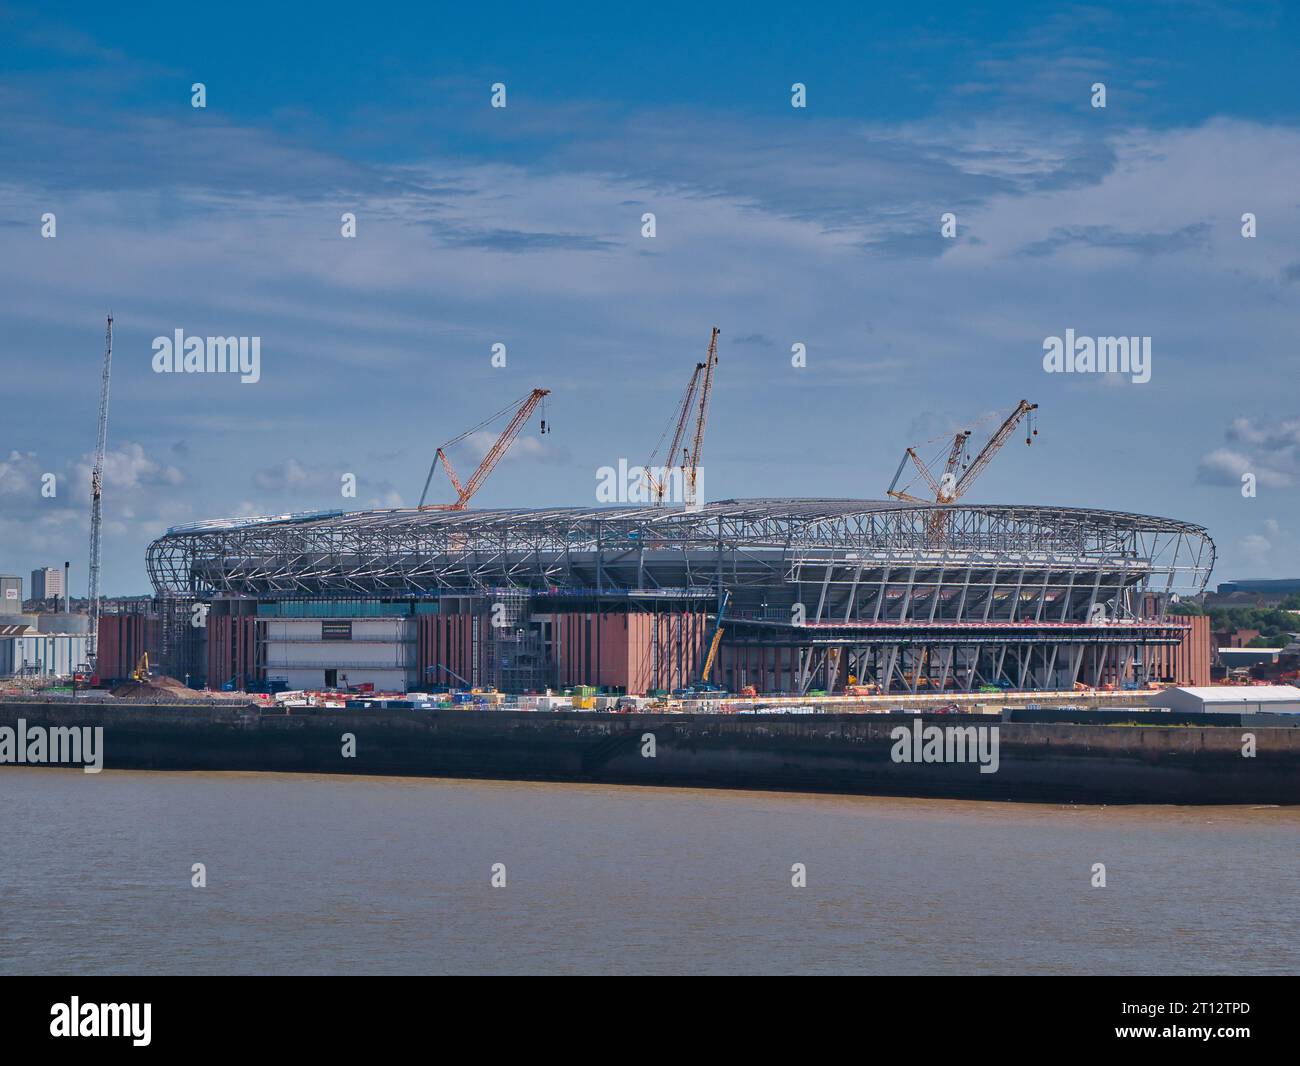 Il nuovo stadio dell'Everton Football Club è in costruzione sulla riva del fiume Mersey a Liverpool, Inghilterra, Regno Unito Foto Stock